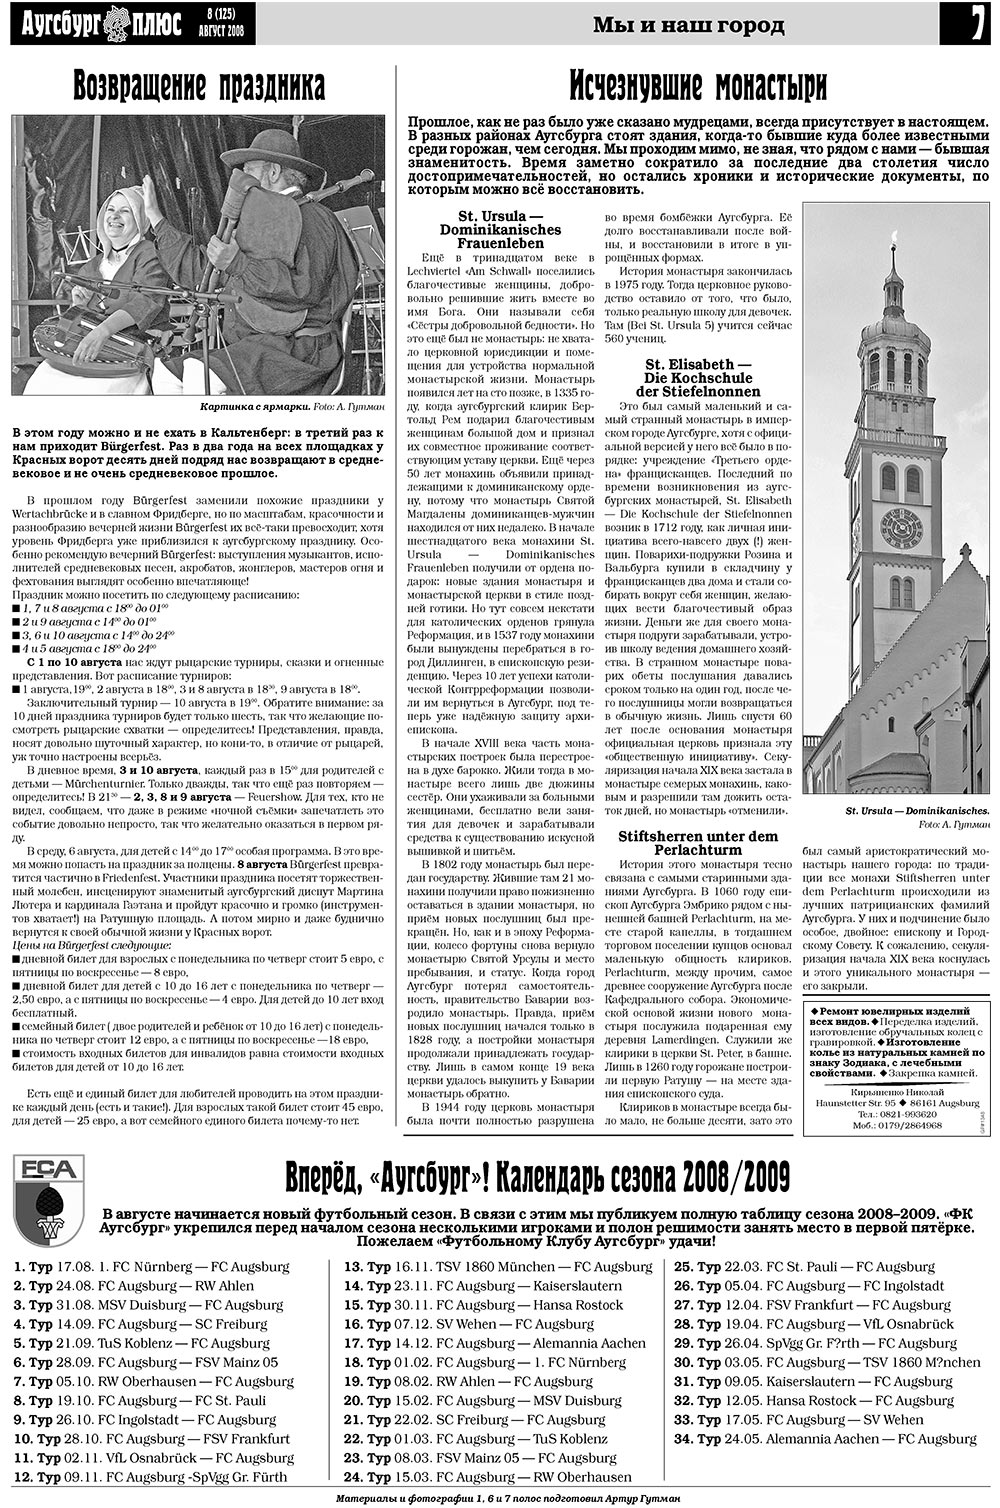 Германия плюс (газета). 2008 год, номер 8, стр. 9